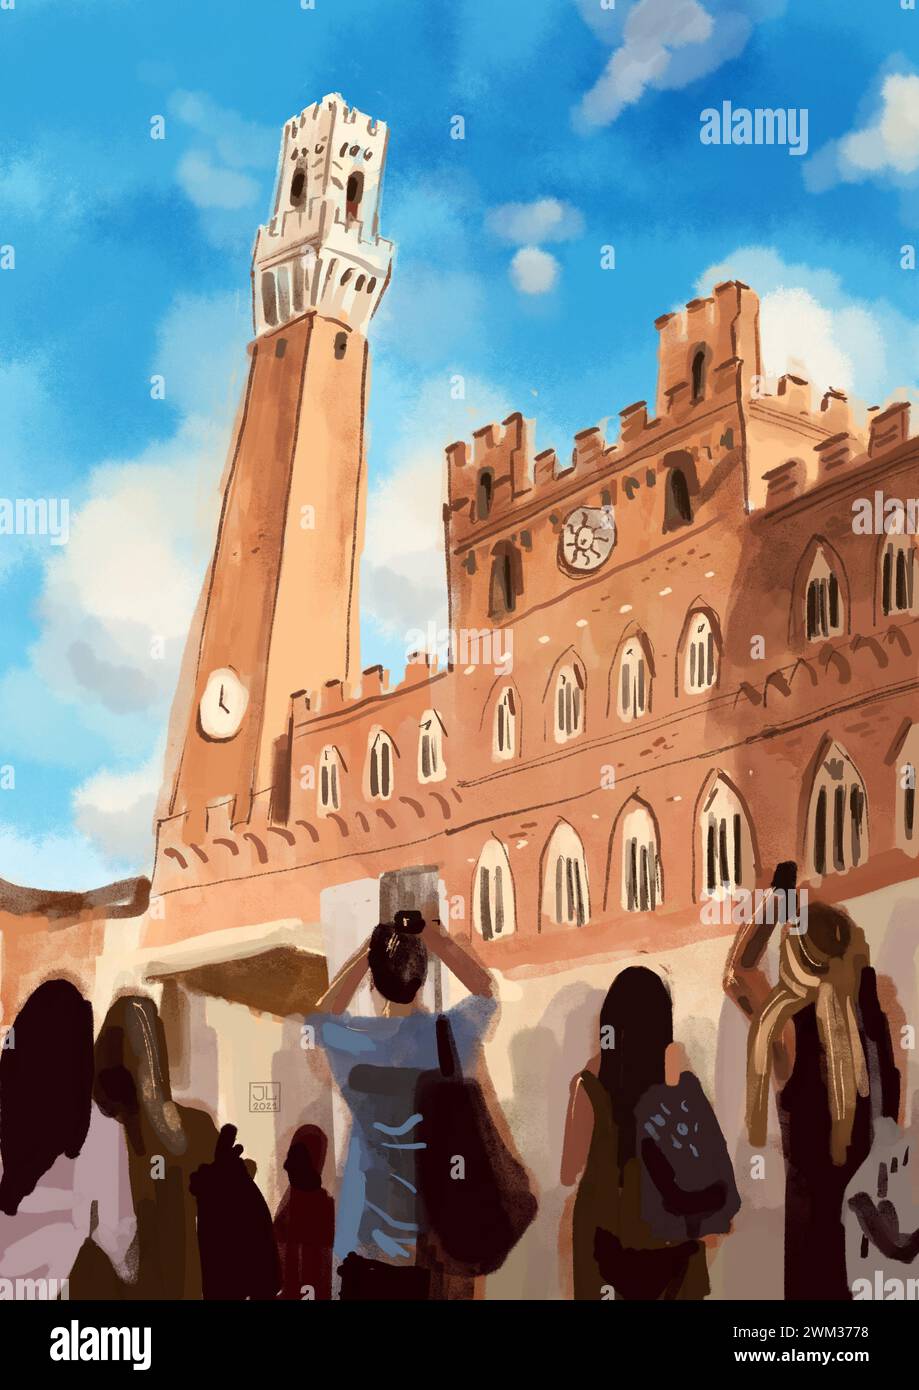 Croquis du Palazzo Pubblico et de la Torre del Mangia en Italie. Illustration numérique aquarelle. Architecture italienne Banque D'Images